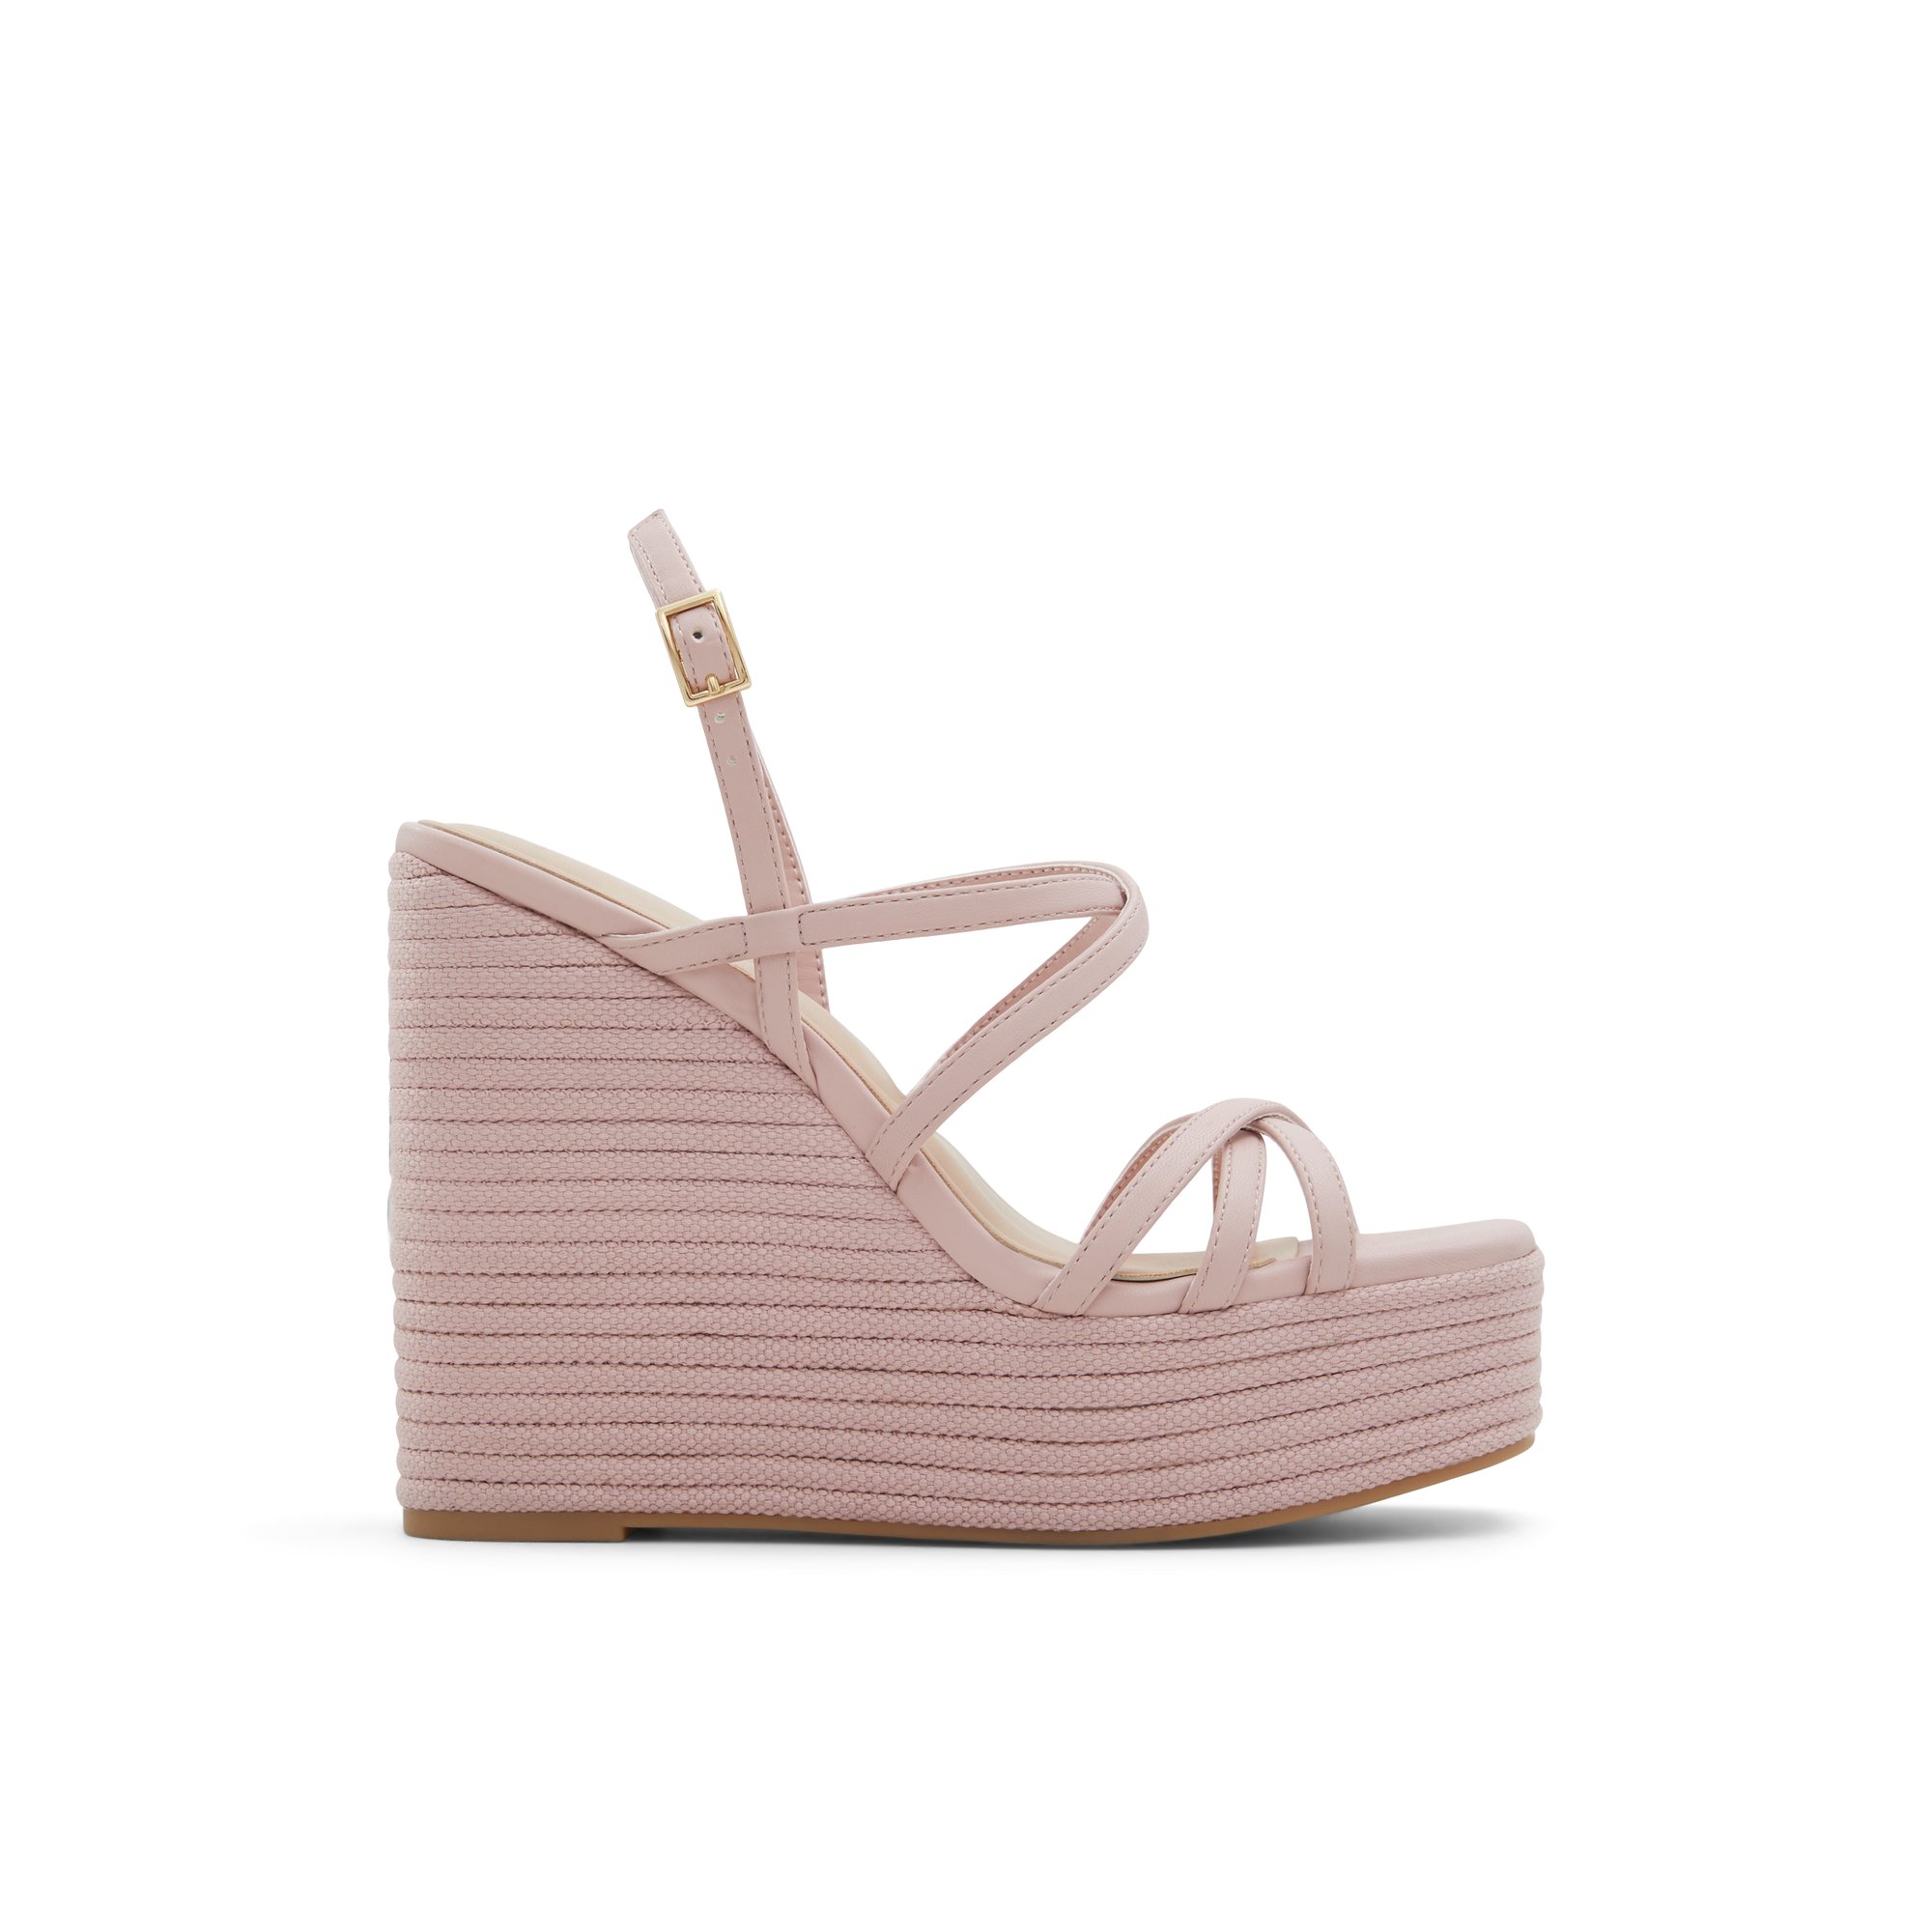 ALDO Cheratram - Women's Wedge Sandals - Pink